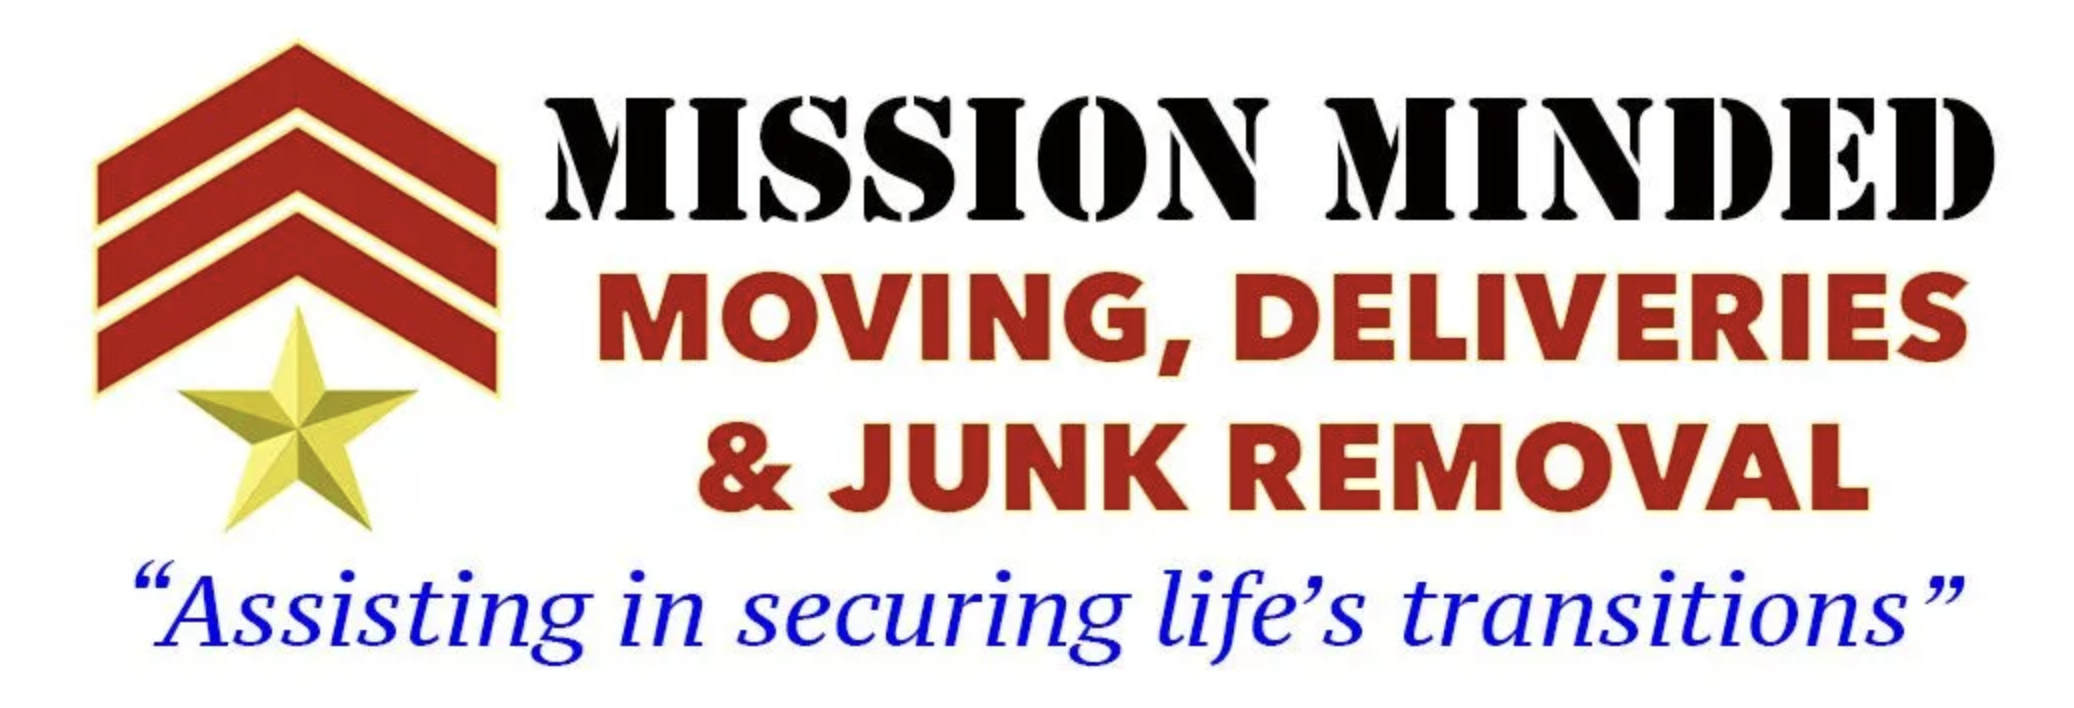 Mission Minded - Moving, Deliveries & Junk Removal